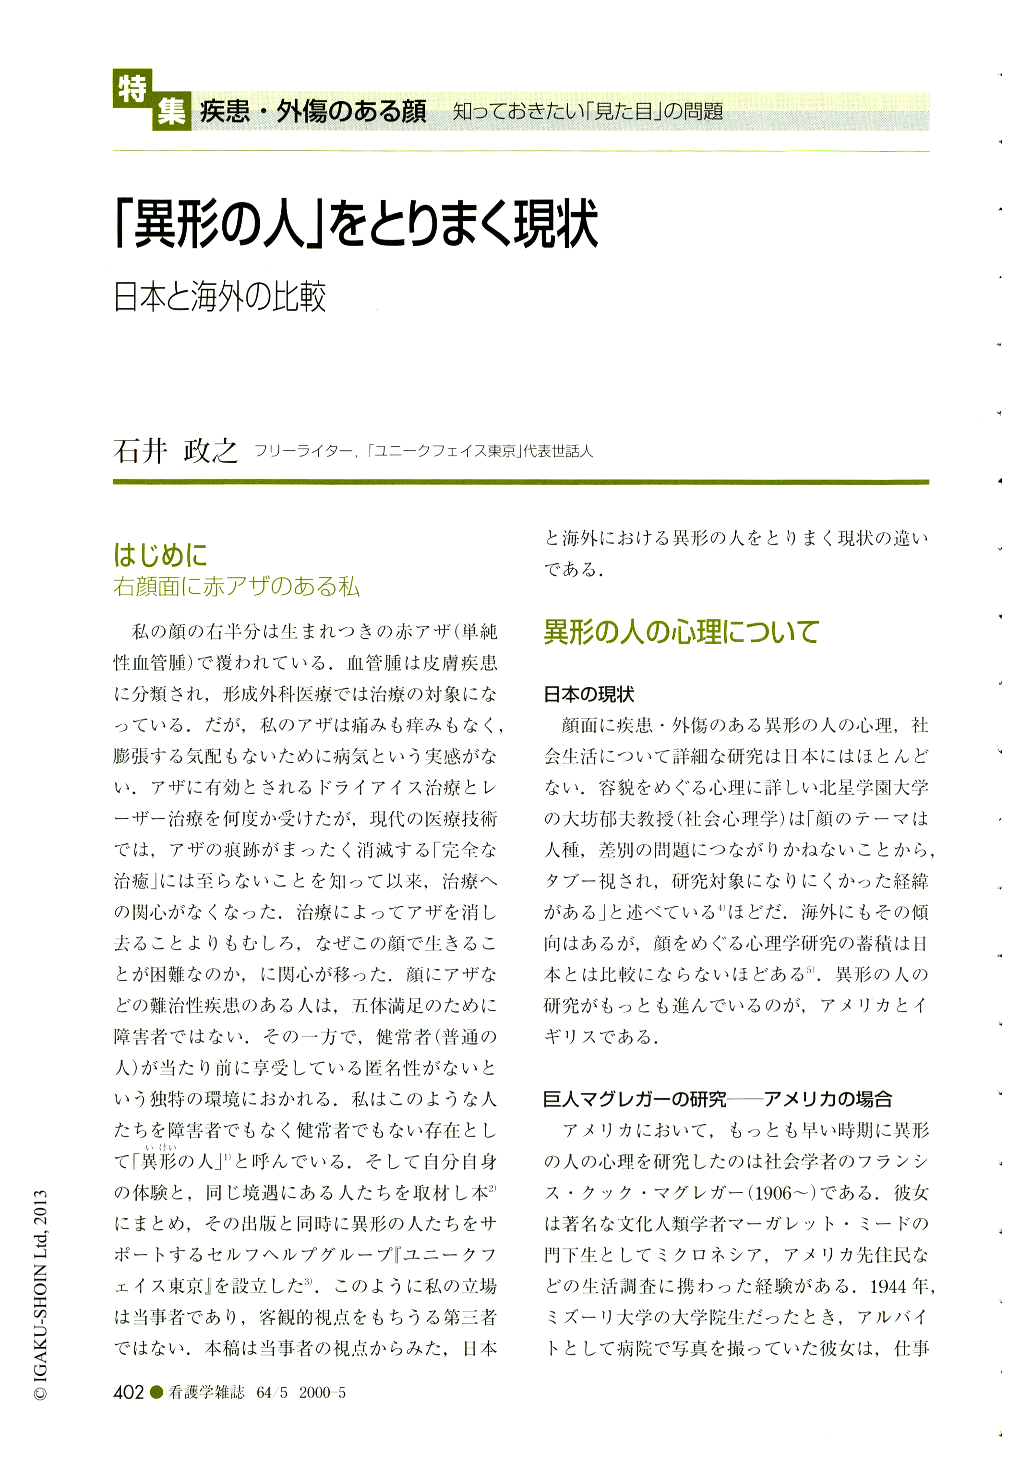 異形の人 をとりまく現状 日本と海外の比較 看護学雑誌 64巻5号 医書 Jp